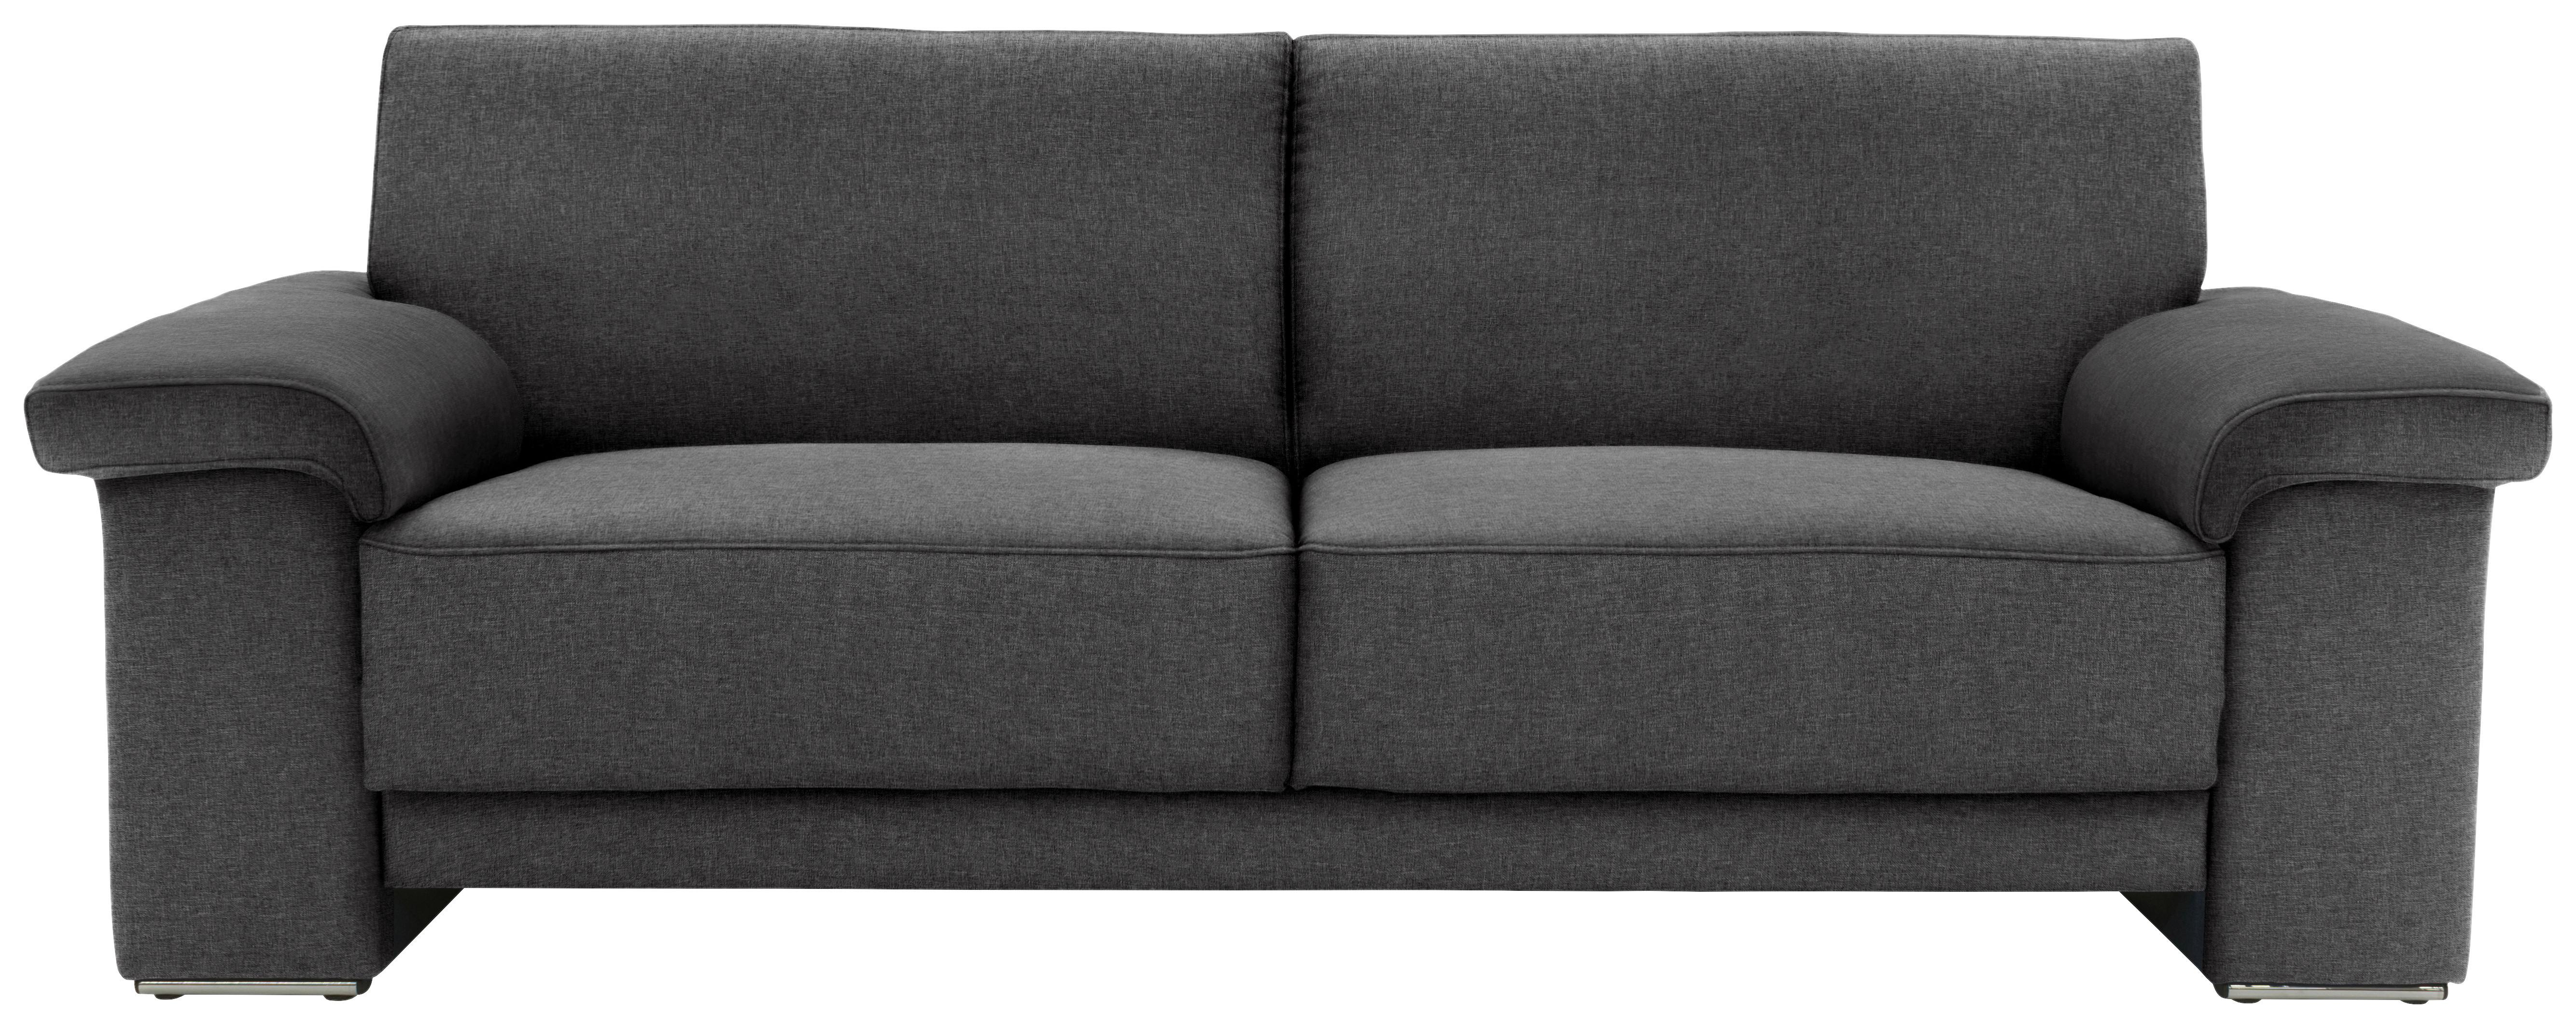 3-Sitzer-Sofa Arizona Armlehnen Braun/Schwarz - Chromfarben/Schwarz, KONVENTIONELL, Textil (214/84/91cm)